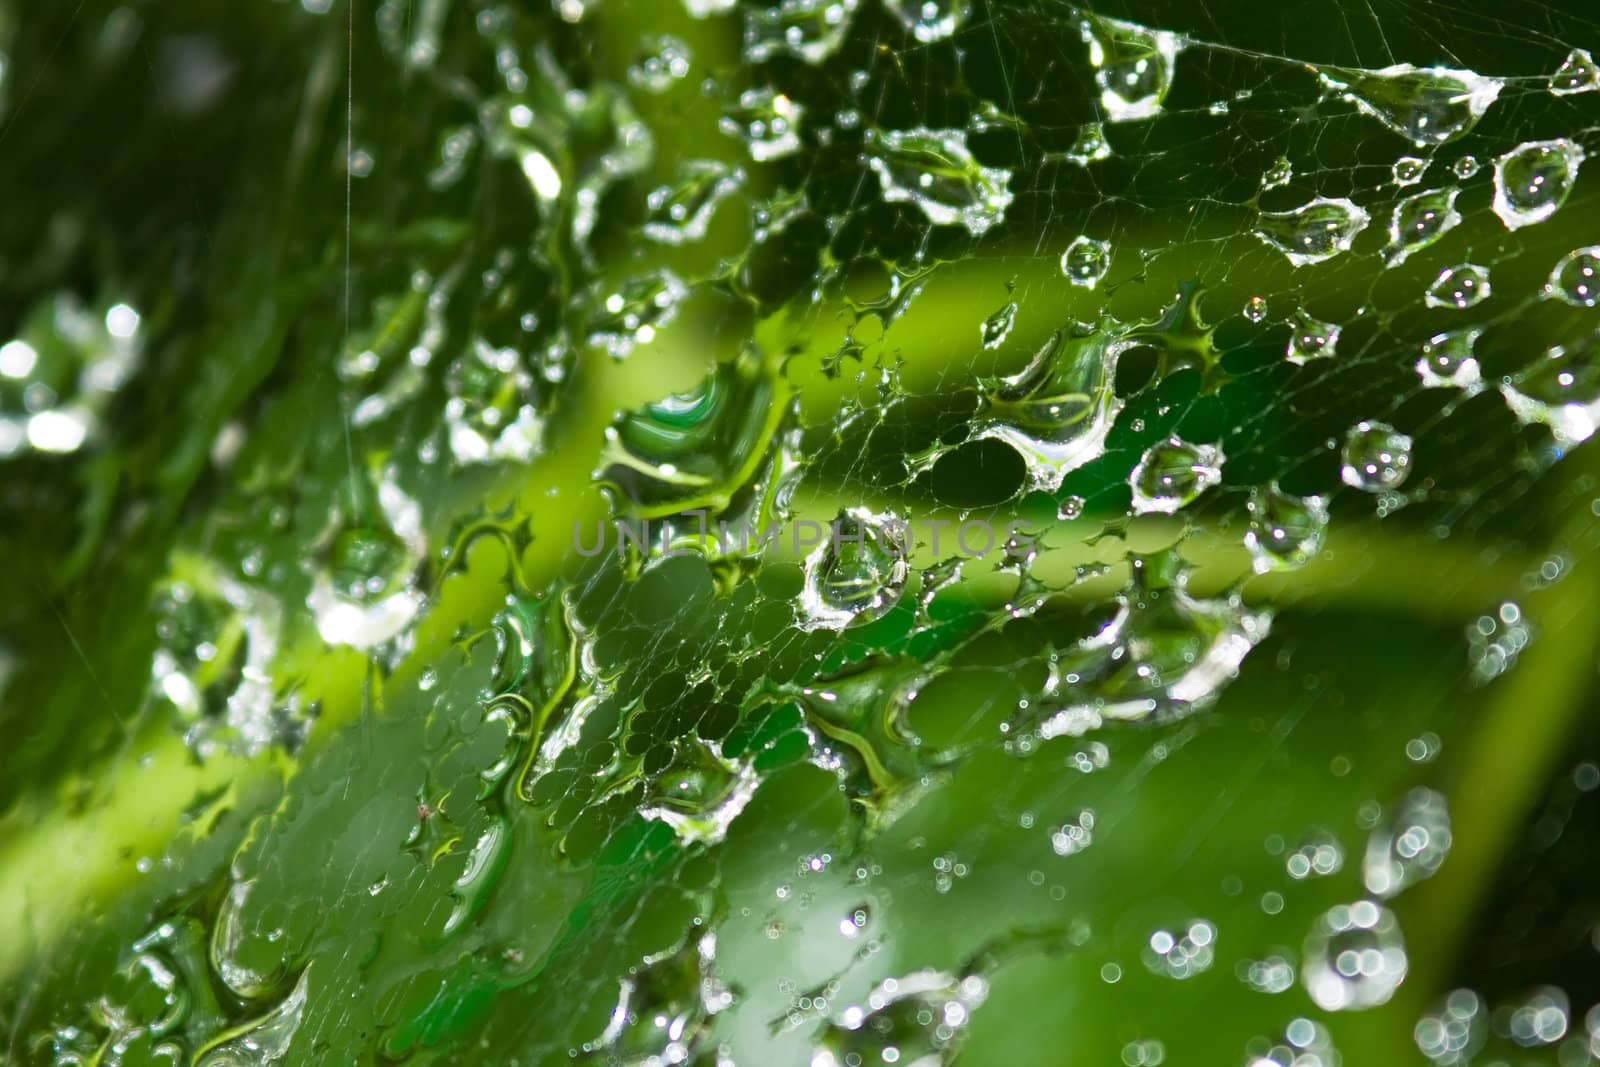 Dew drops on a web by Bedolaga